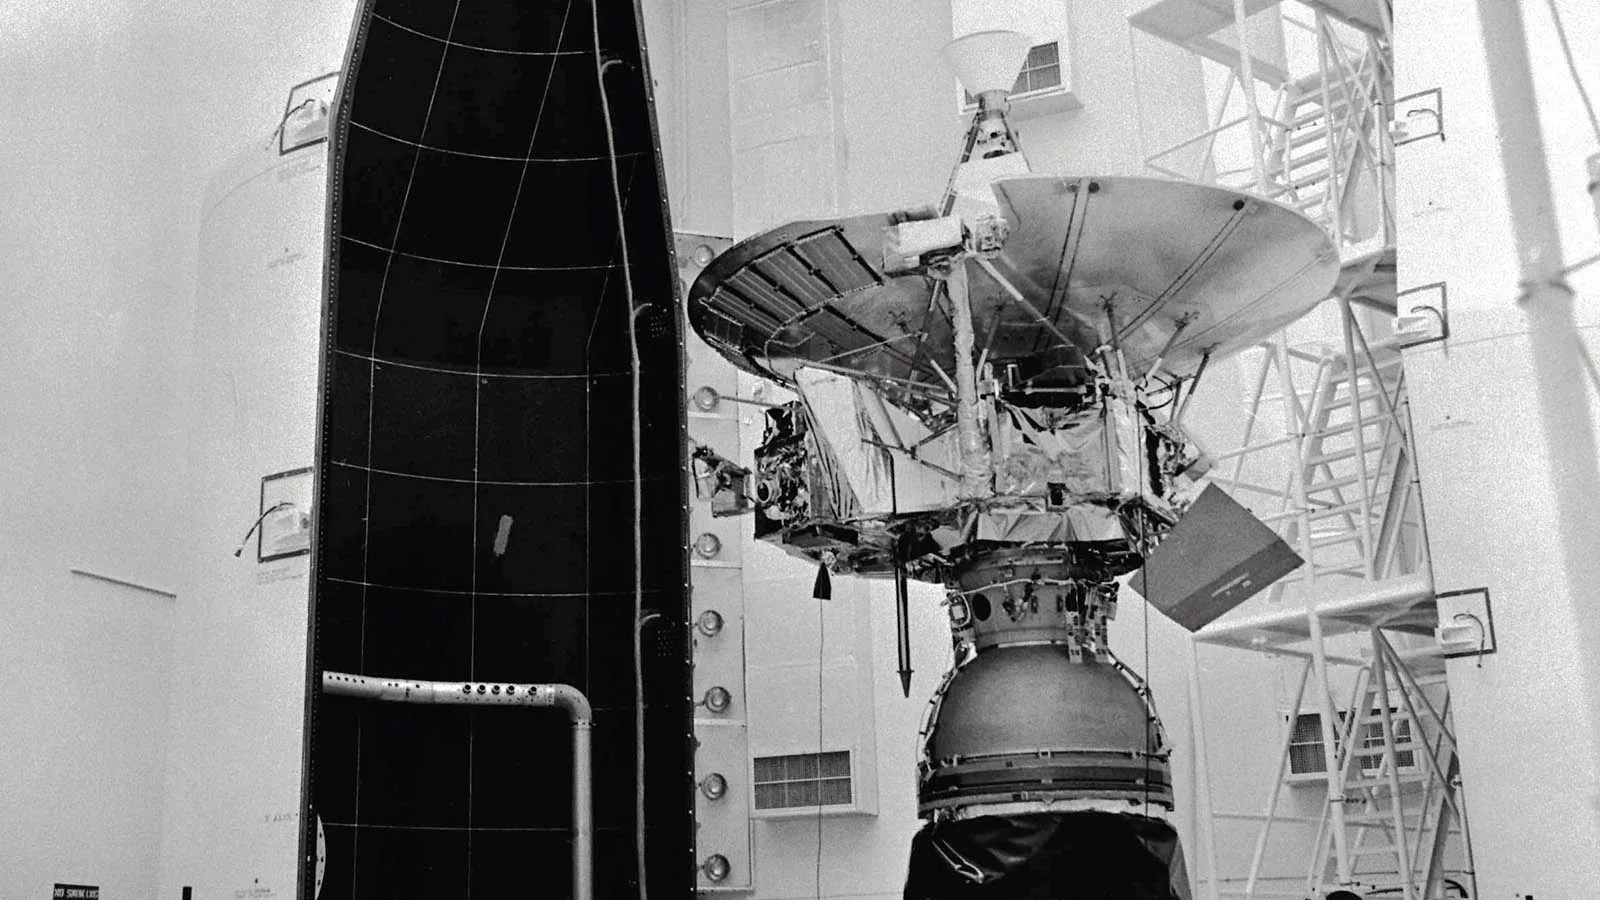 Pioneer 11 in between rocket fairings.